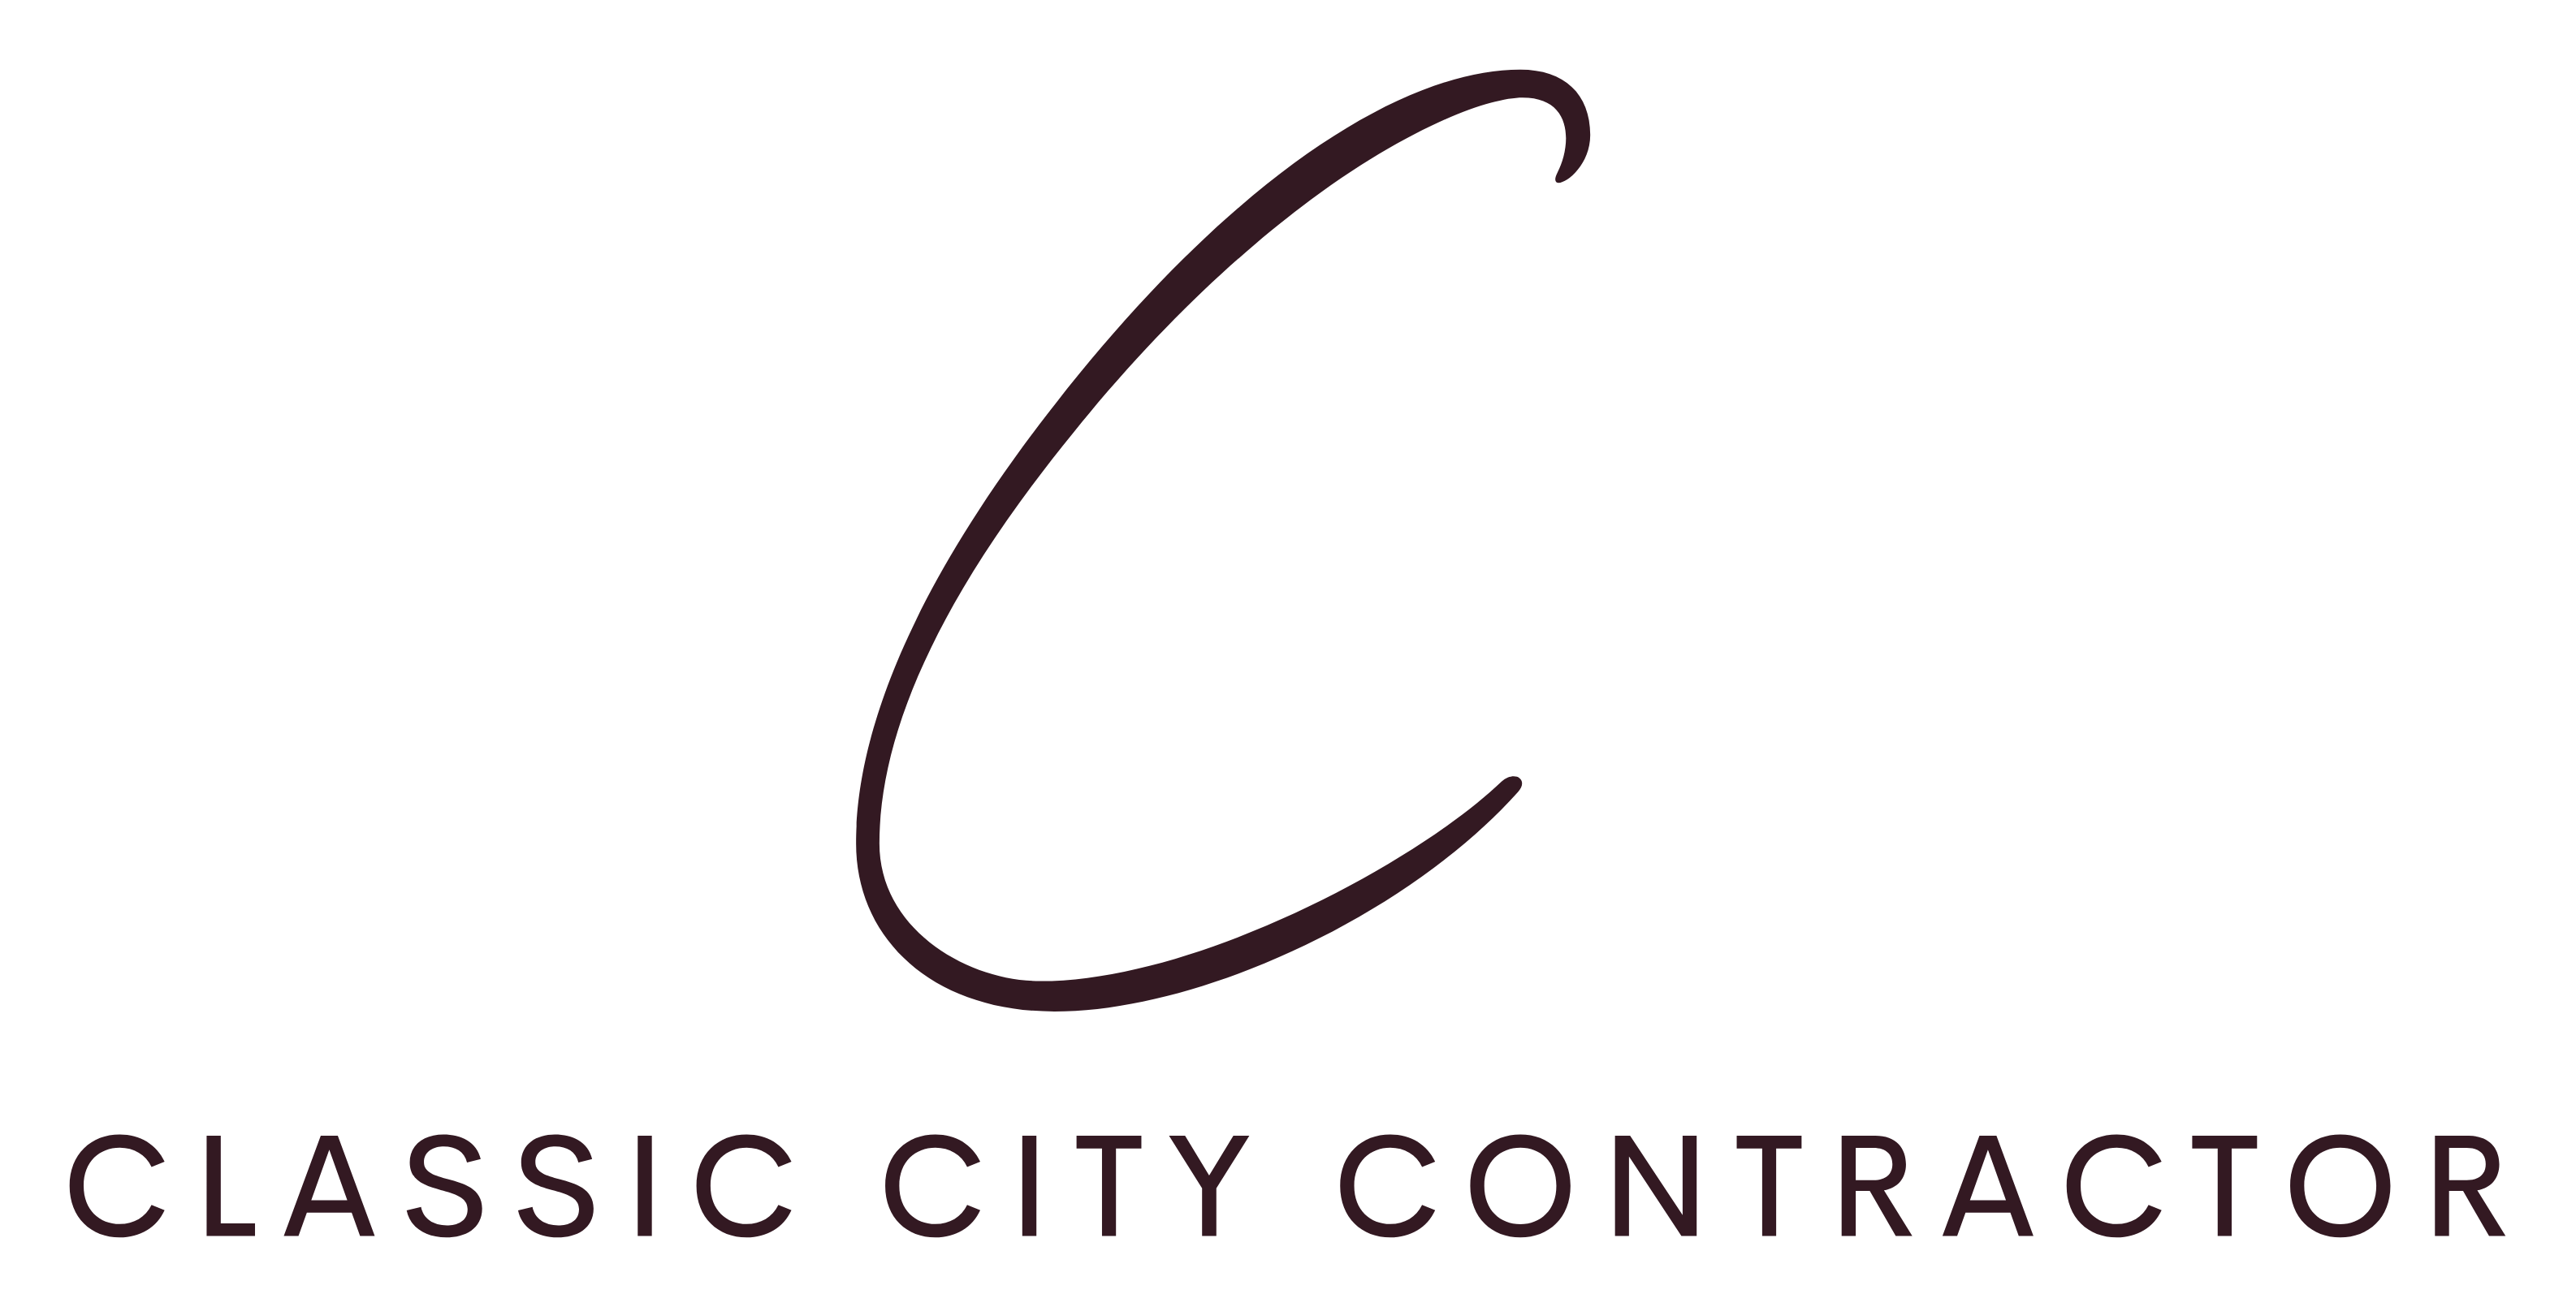 Classic City Contractor, LLC